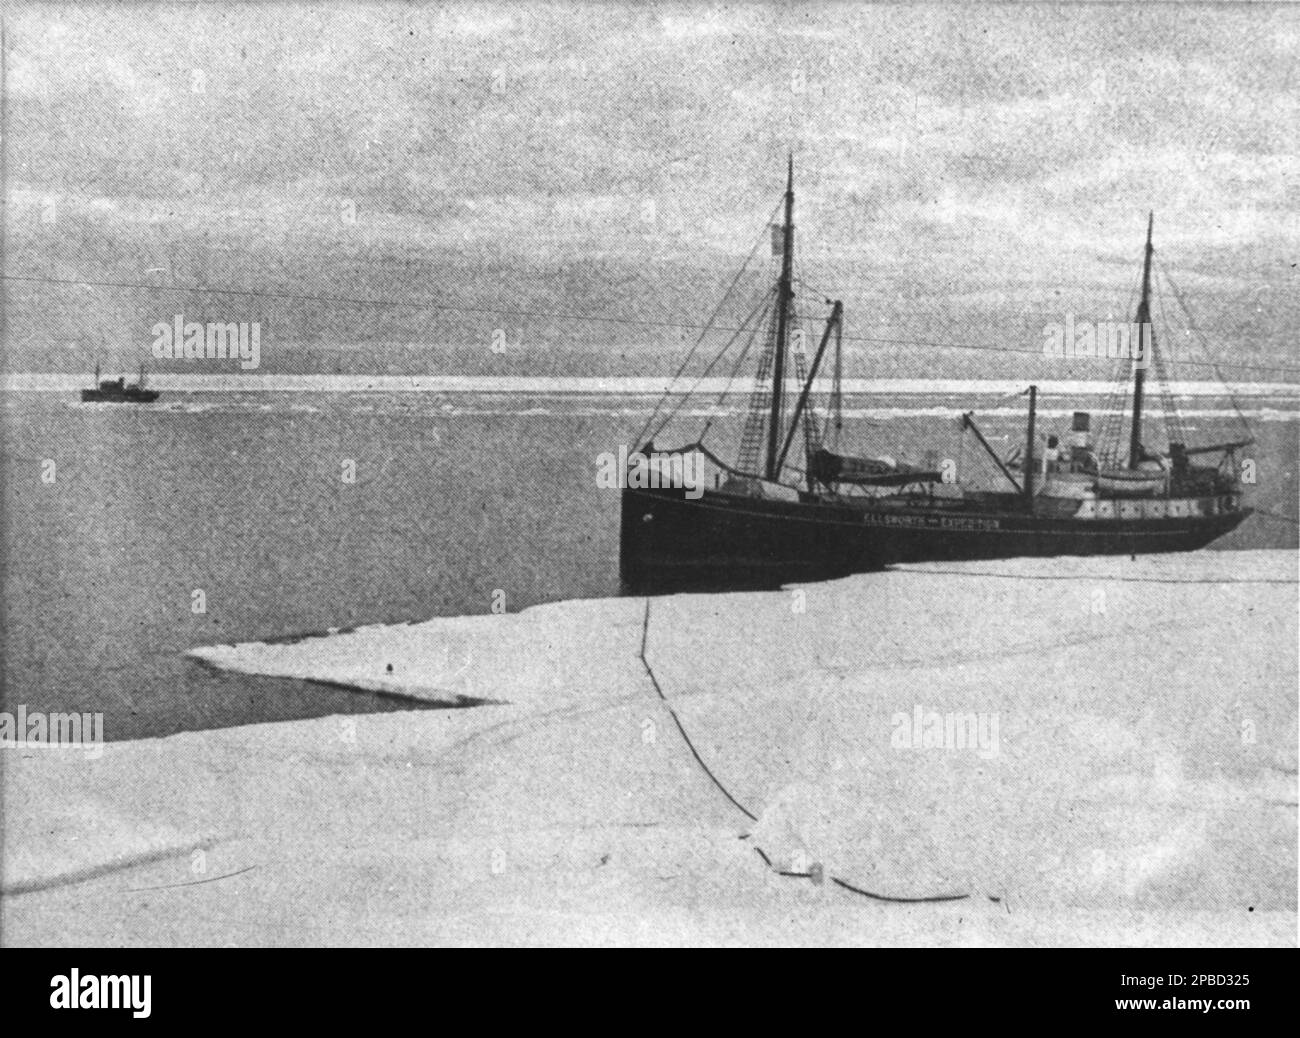 HMAS Wyatt Earp liegt in der Bay of Whales, einem natürlichen Eishafen, oder iceport, vor dem Ross Ice Shelf nördlich von Roosevelt Island, Antarktis. Es ist der südlichste Punkt des offenen Ozeans nicht nur des Ross-Meeres, sondern weltweit. Ungefähr 1933. Stockfoto